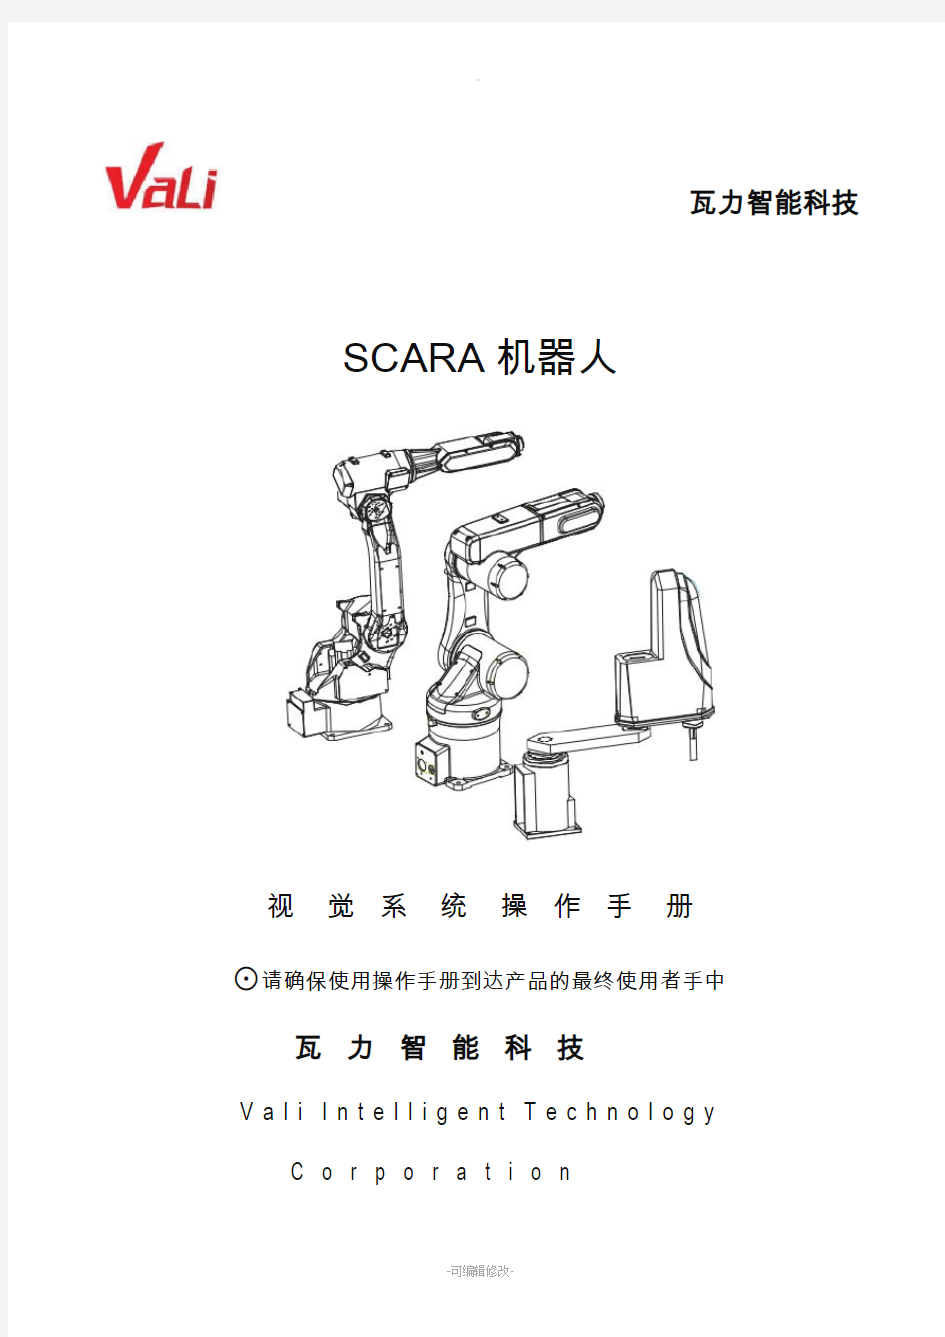 SCARA机器人视觉操作说明